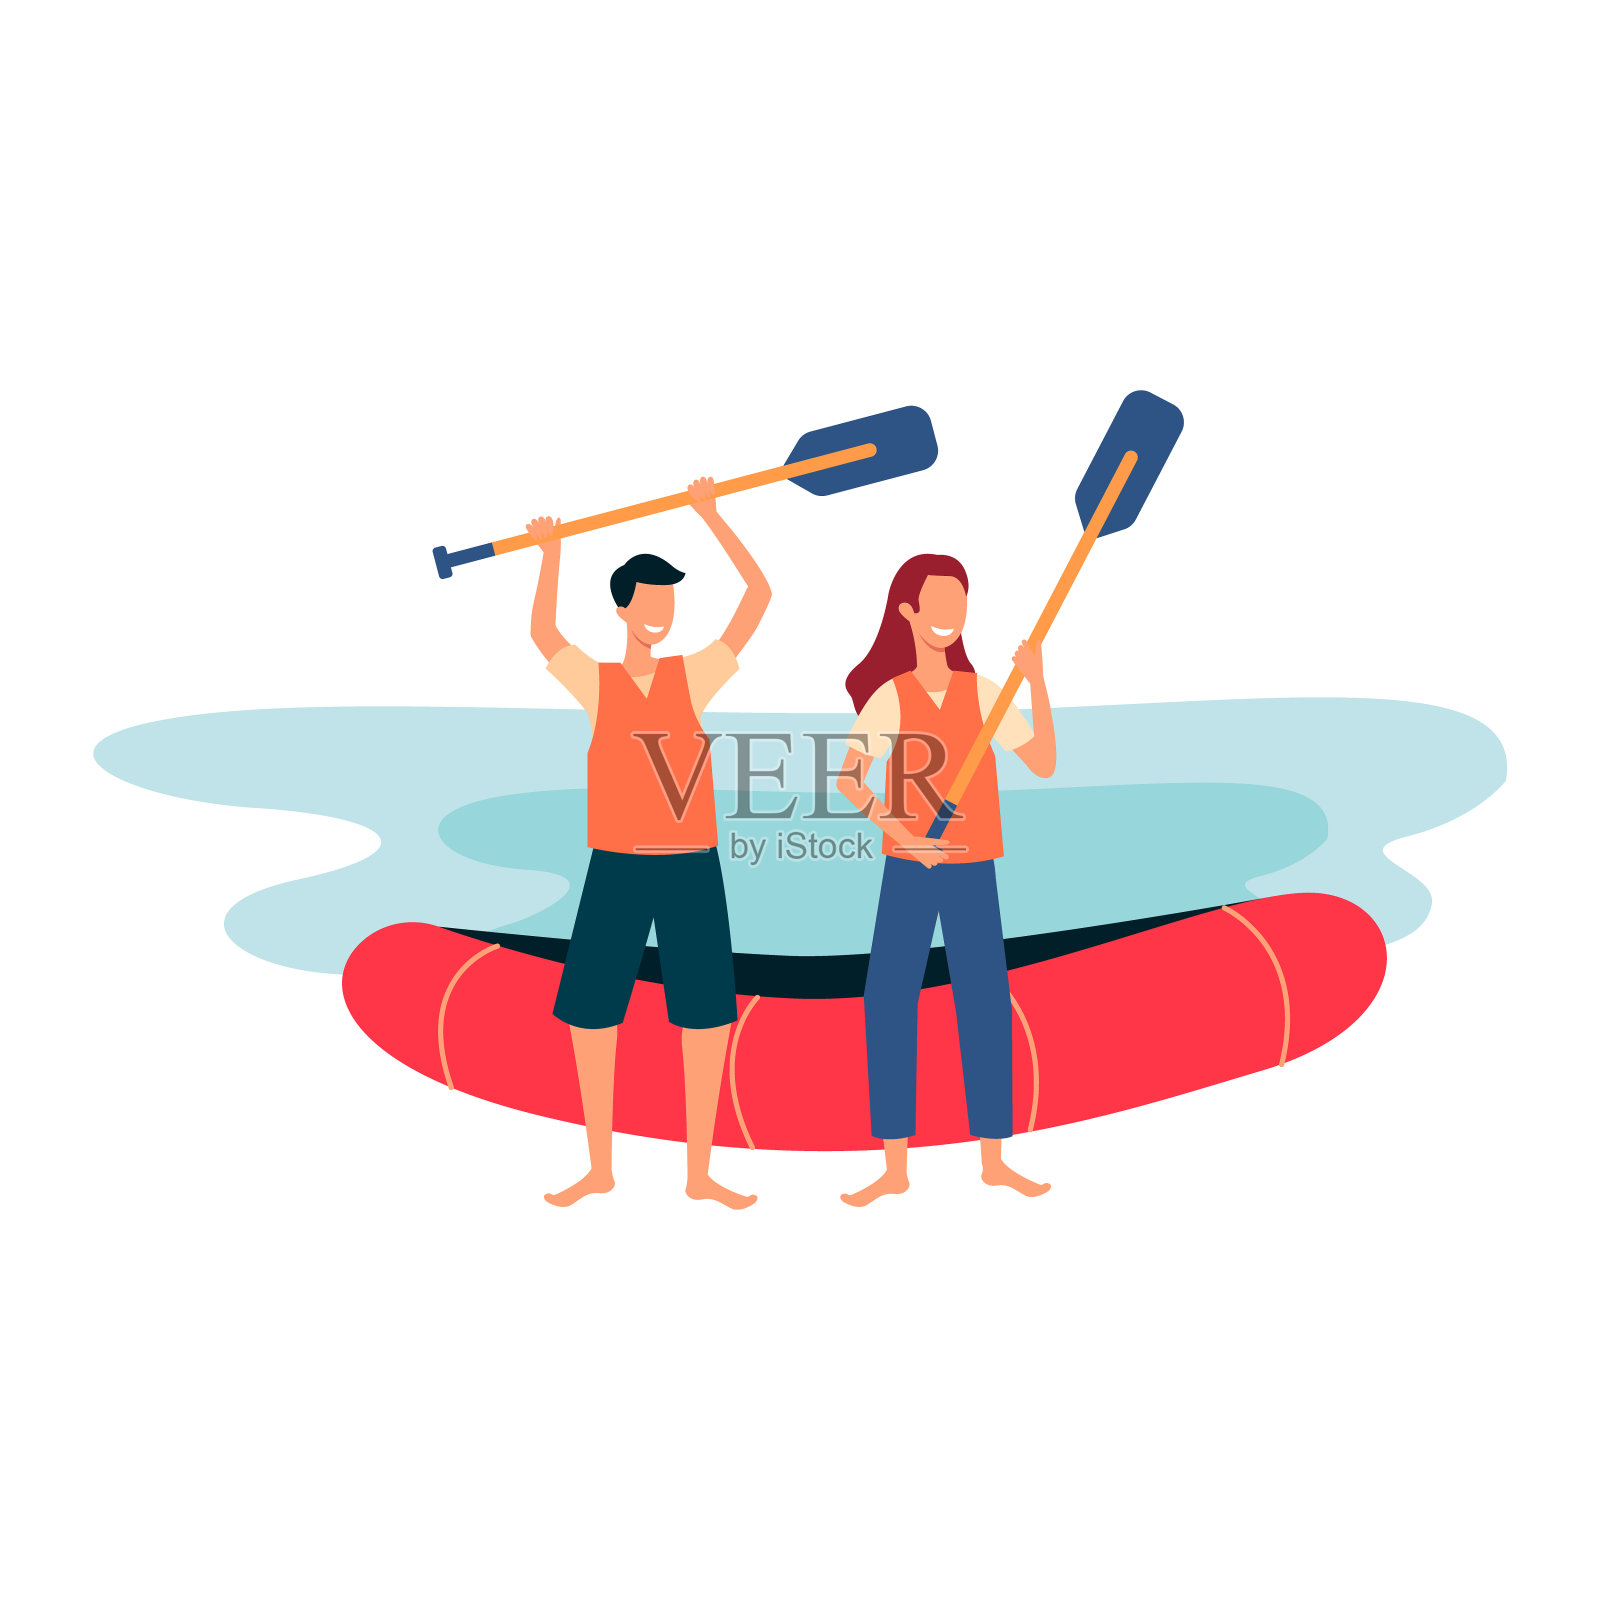 漂流终点线——卡通人物站在岸边，拿着船桨，面带微笑设计元素图片